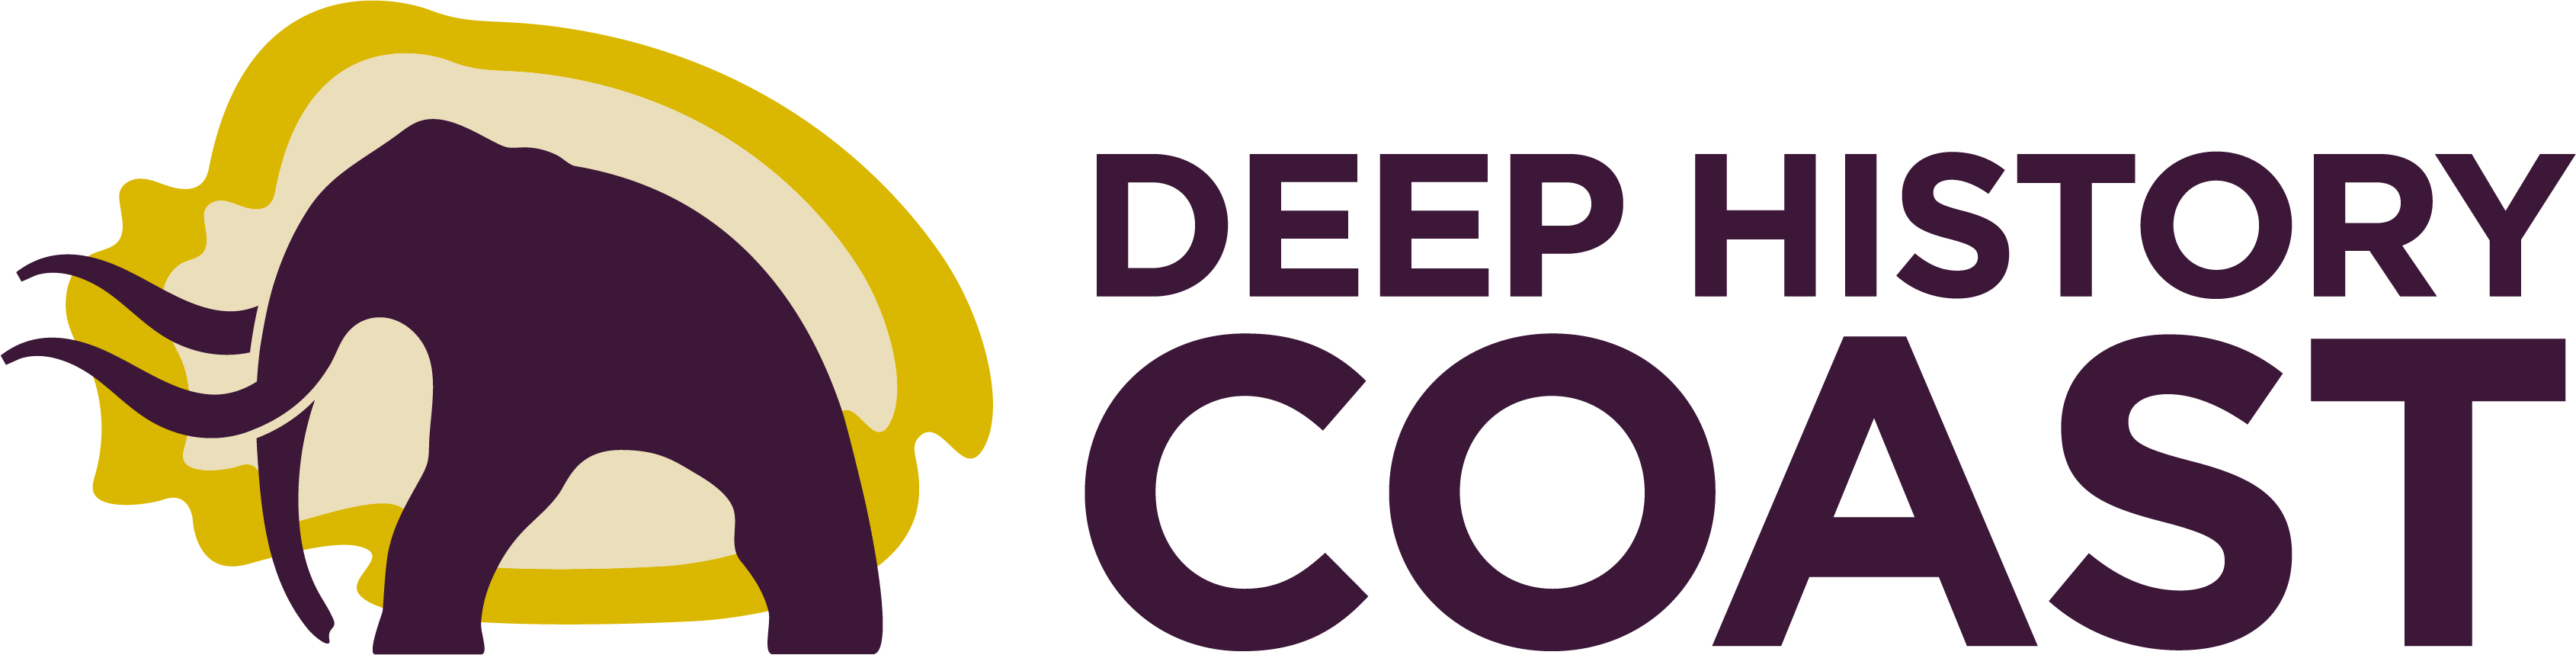 Deep History Coast logo